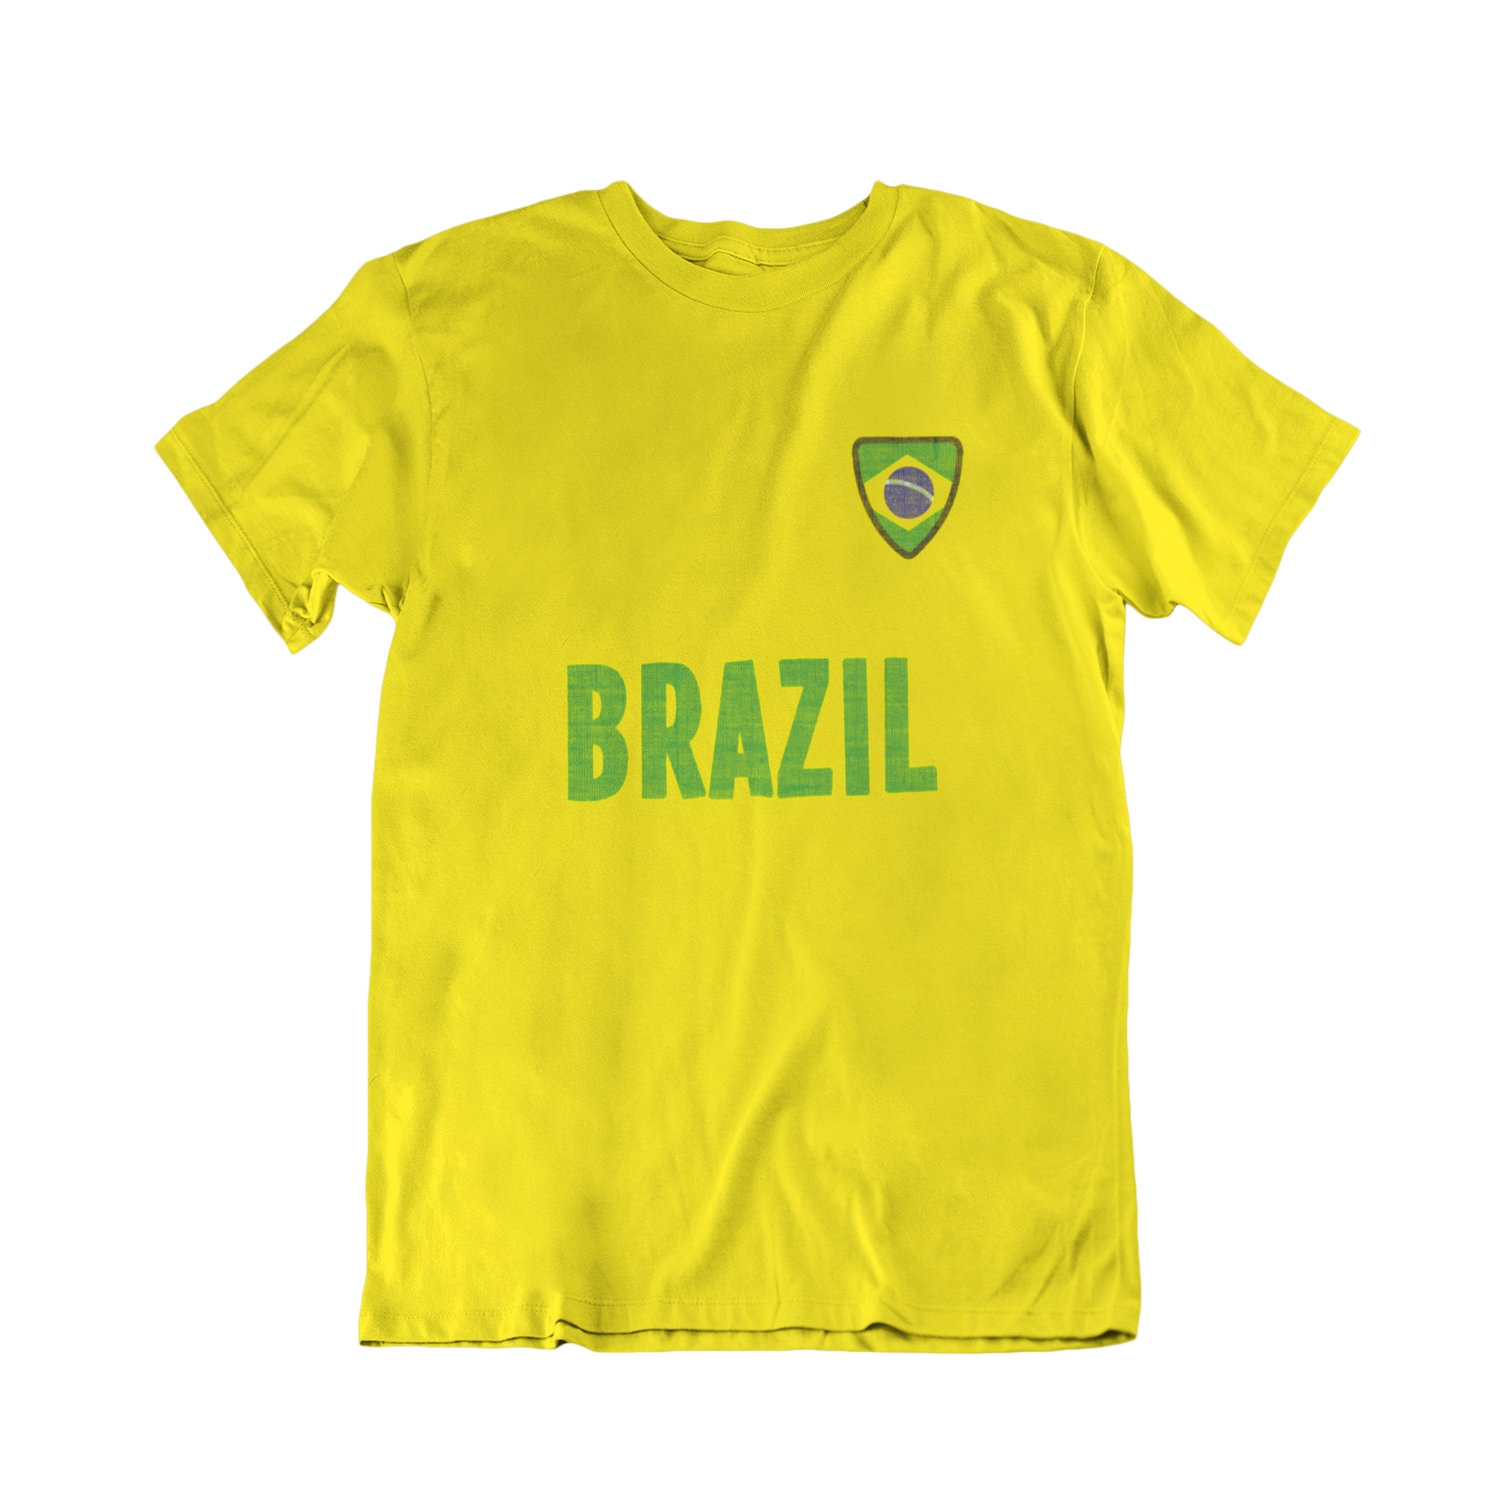 BRASIL Camiseta de fútbol Insignia del nombre del país, Hombre